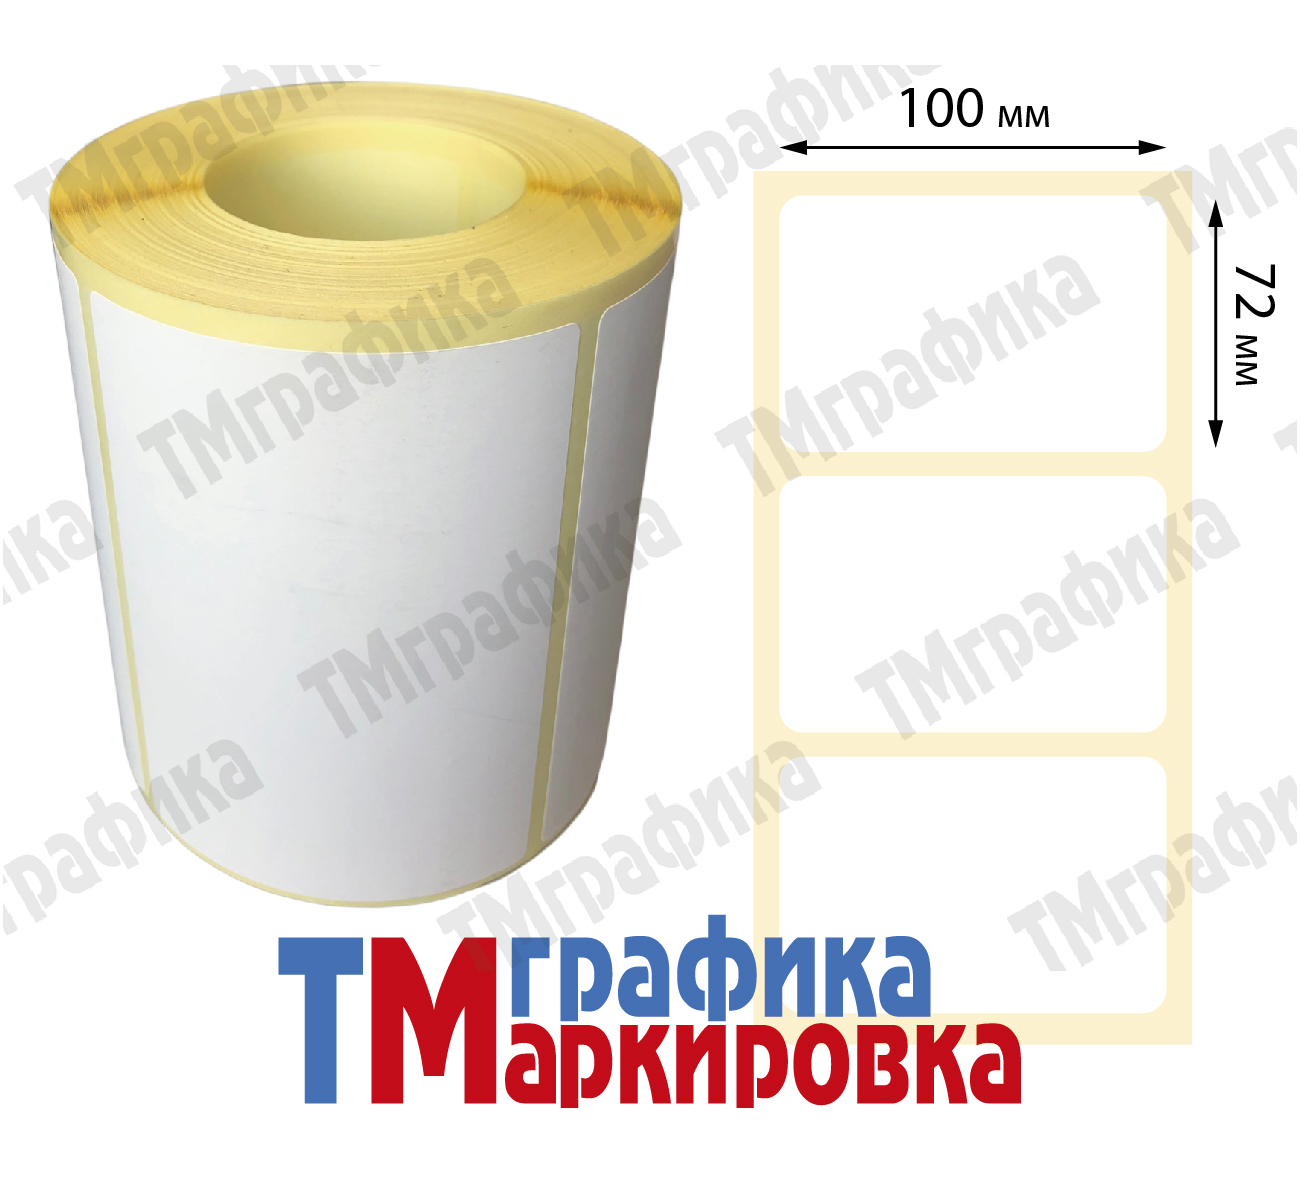 100х72 мм 500 шт. полипропиленовые Термотрансферные этикетки - 1 000.11 руб.